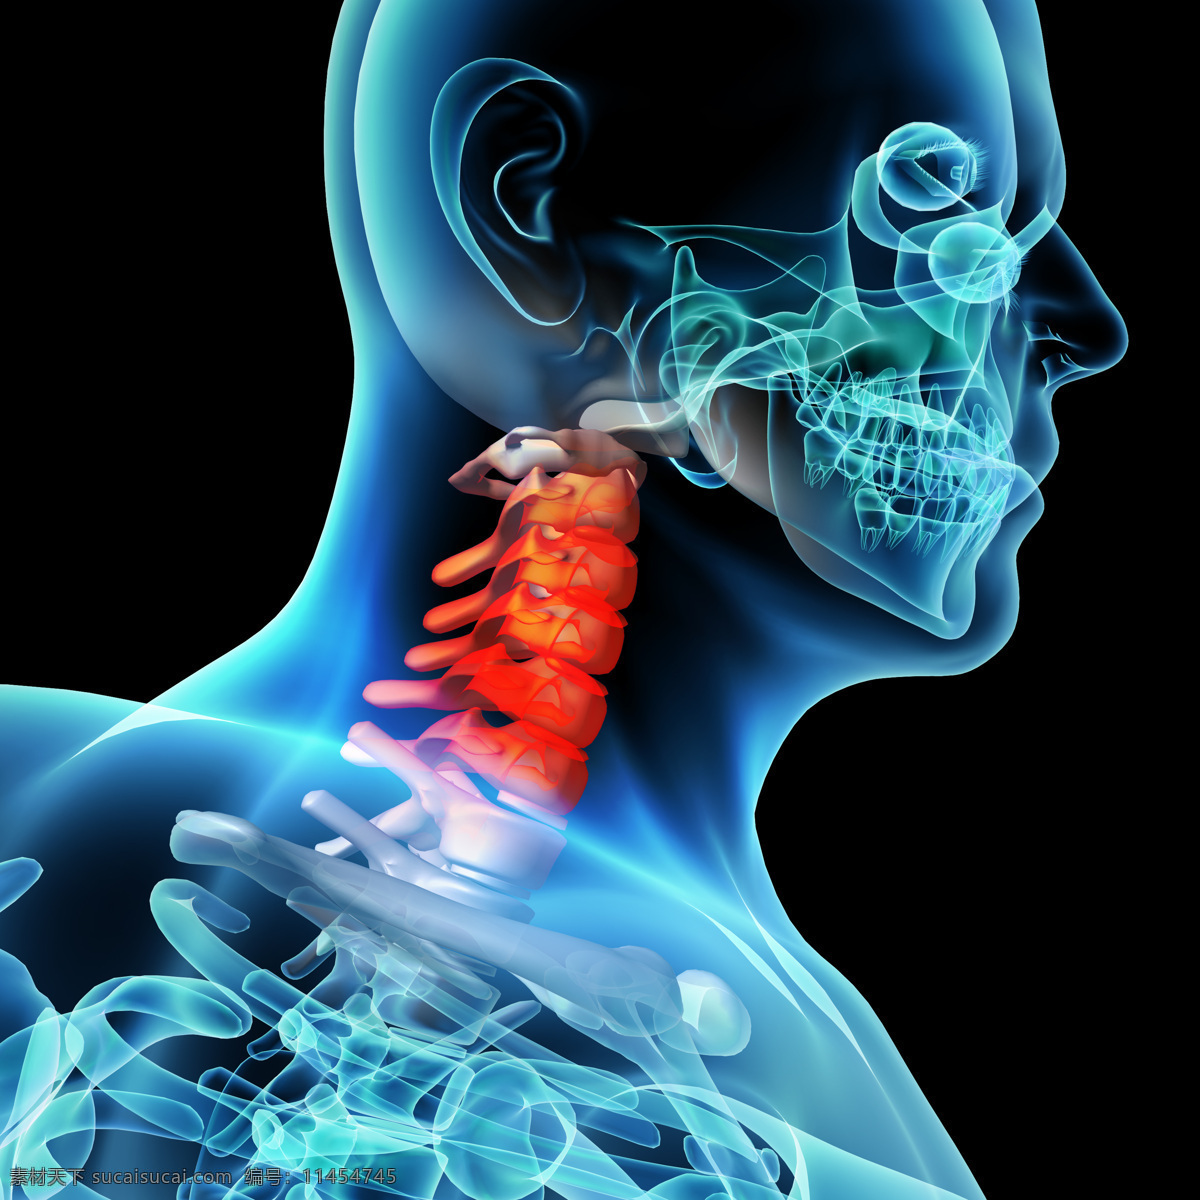 颈椎 肌肉 骨骼 结构 脊柱 人体结构 人体骨骼 人体肌肉 人体标本 人体构造 医学标本 科学研究 现代科技